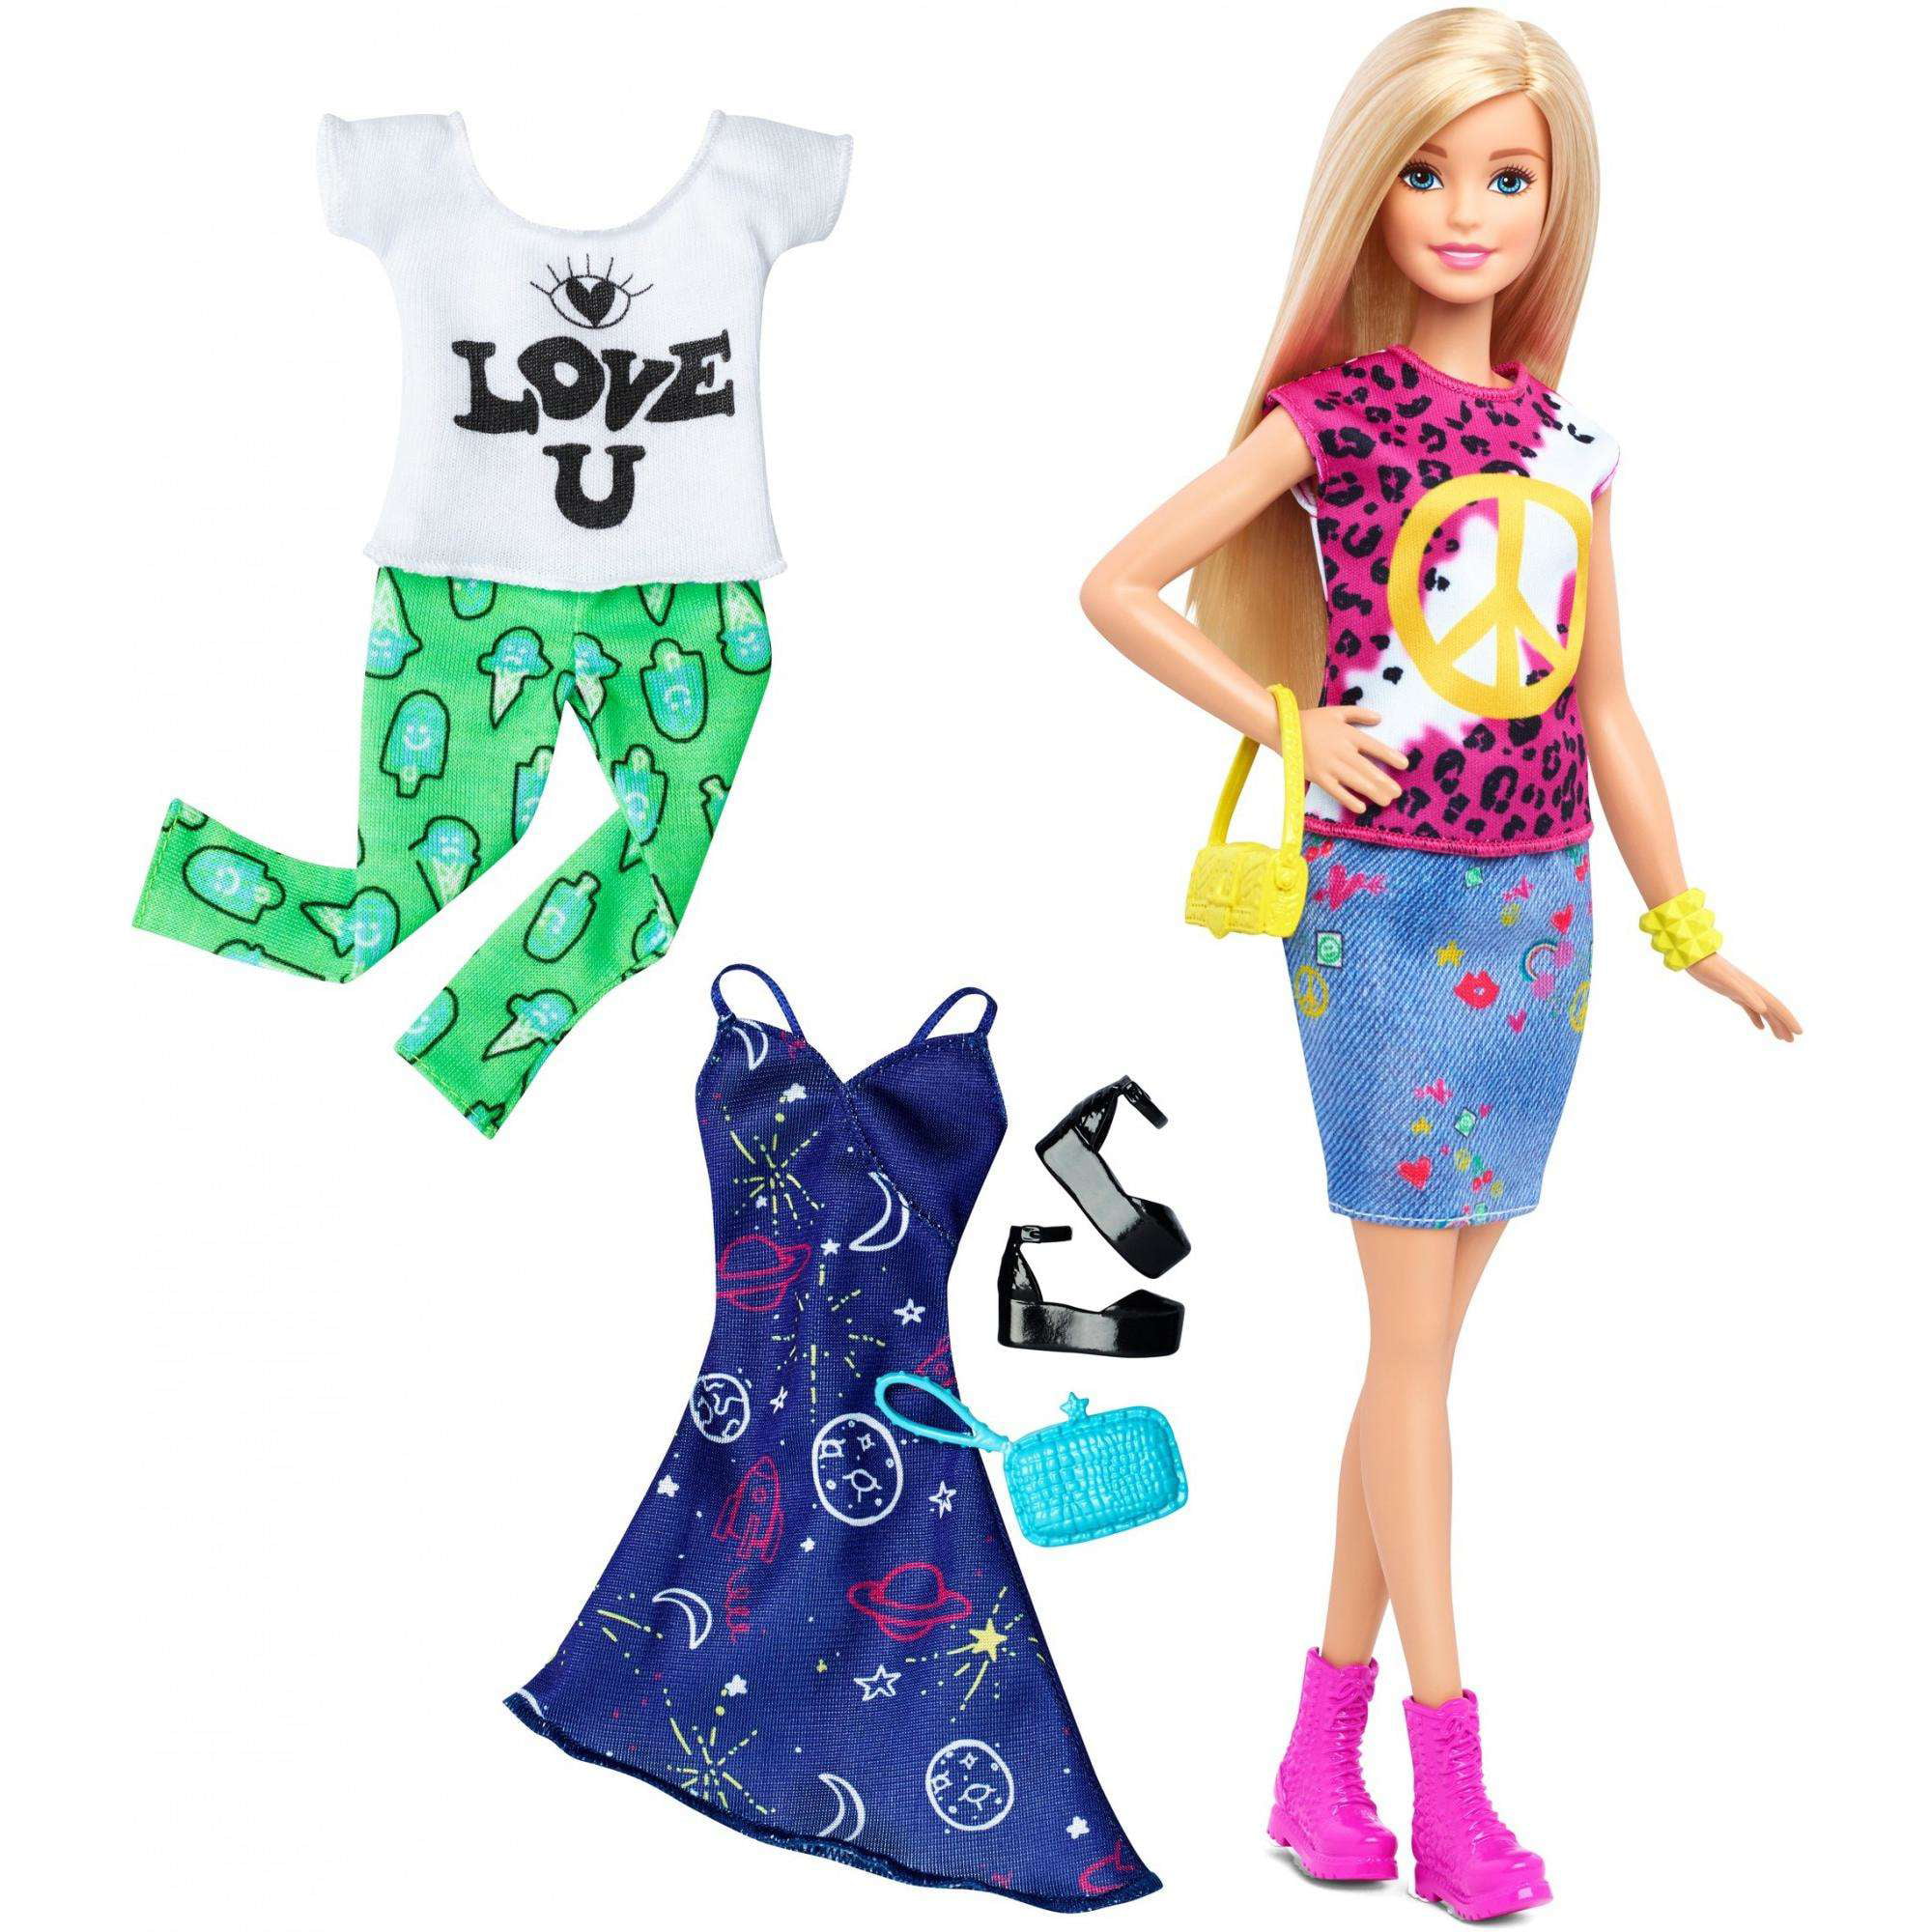 Barbie Fashionistas Doll & Fashions 35 Peace & Love - Walmart.com ...